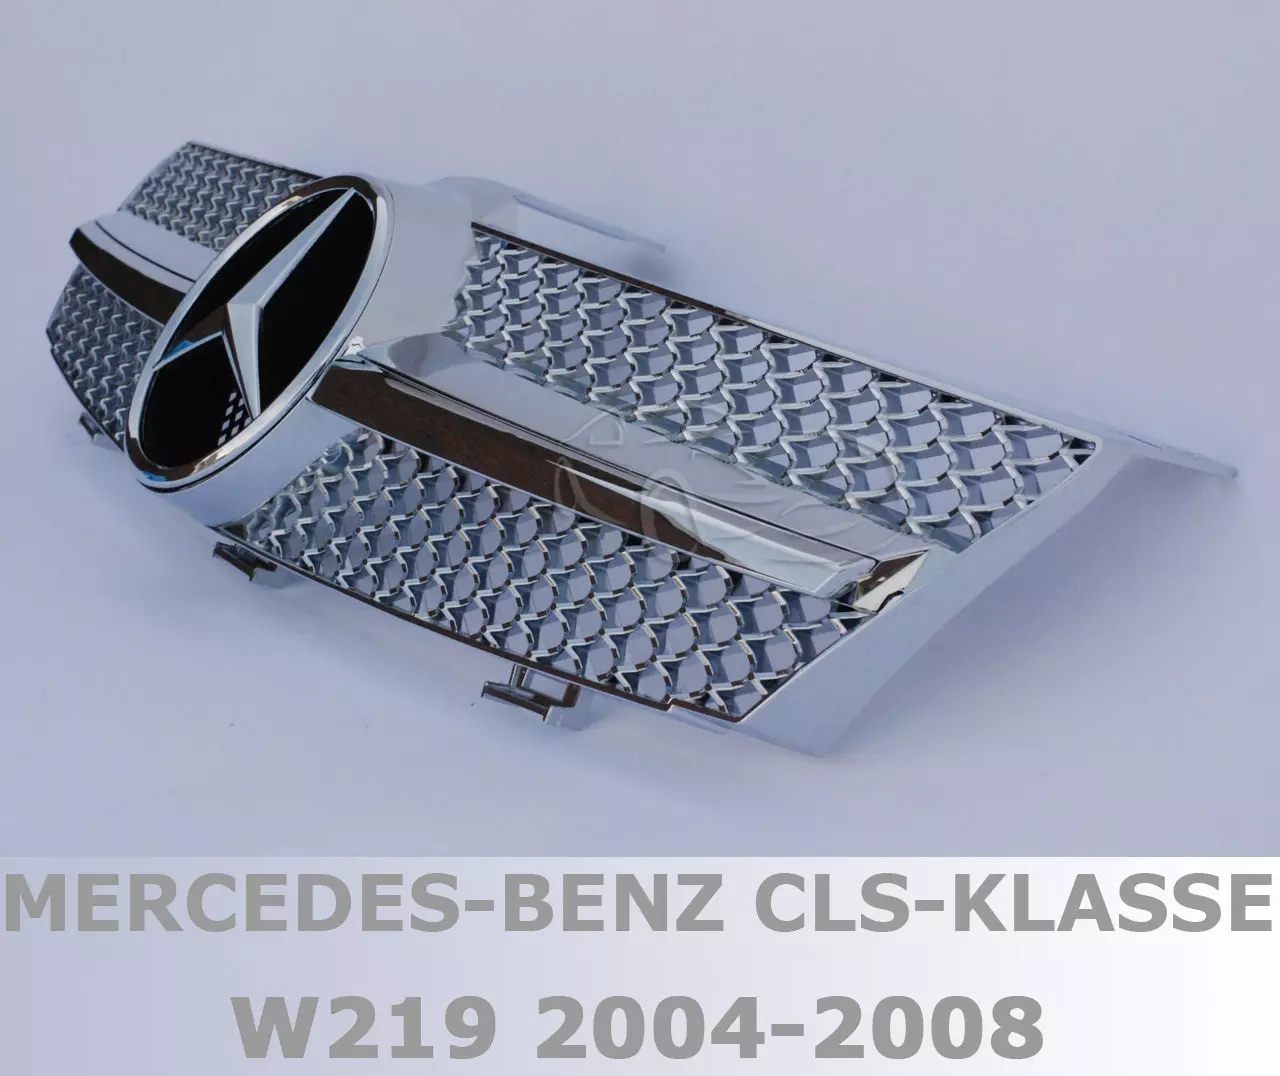 Mercedes Benz W219 CLS 2004-2008 króm hűtőrács AMG stílusban